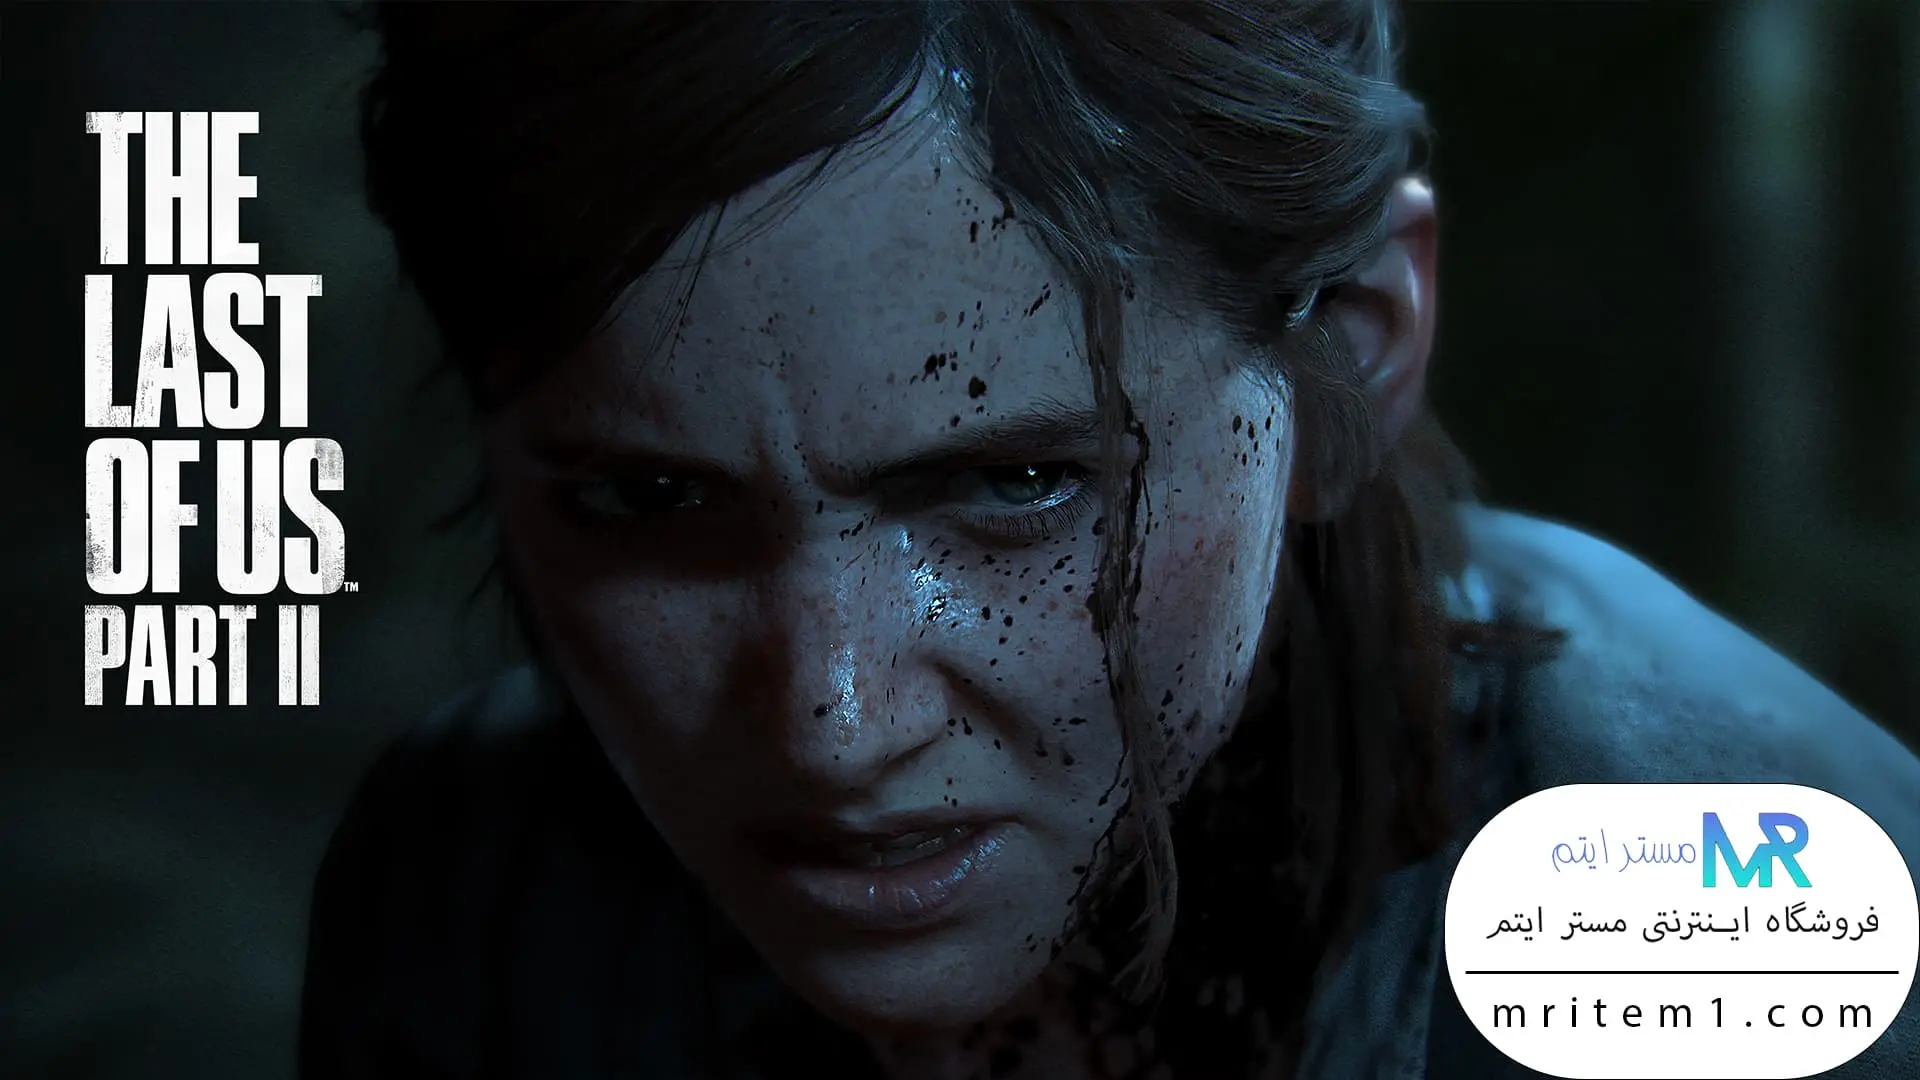 خرید بازی لست اف اس پارت 2 برای پلی استیشن - PS4 - PS5 - بازی The Last of Us Part II برای Ps4 - Ps5